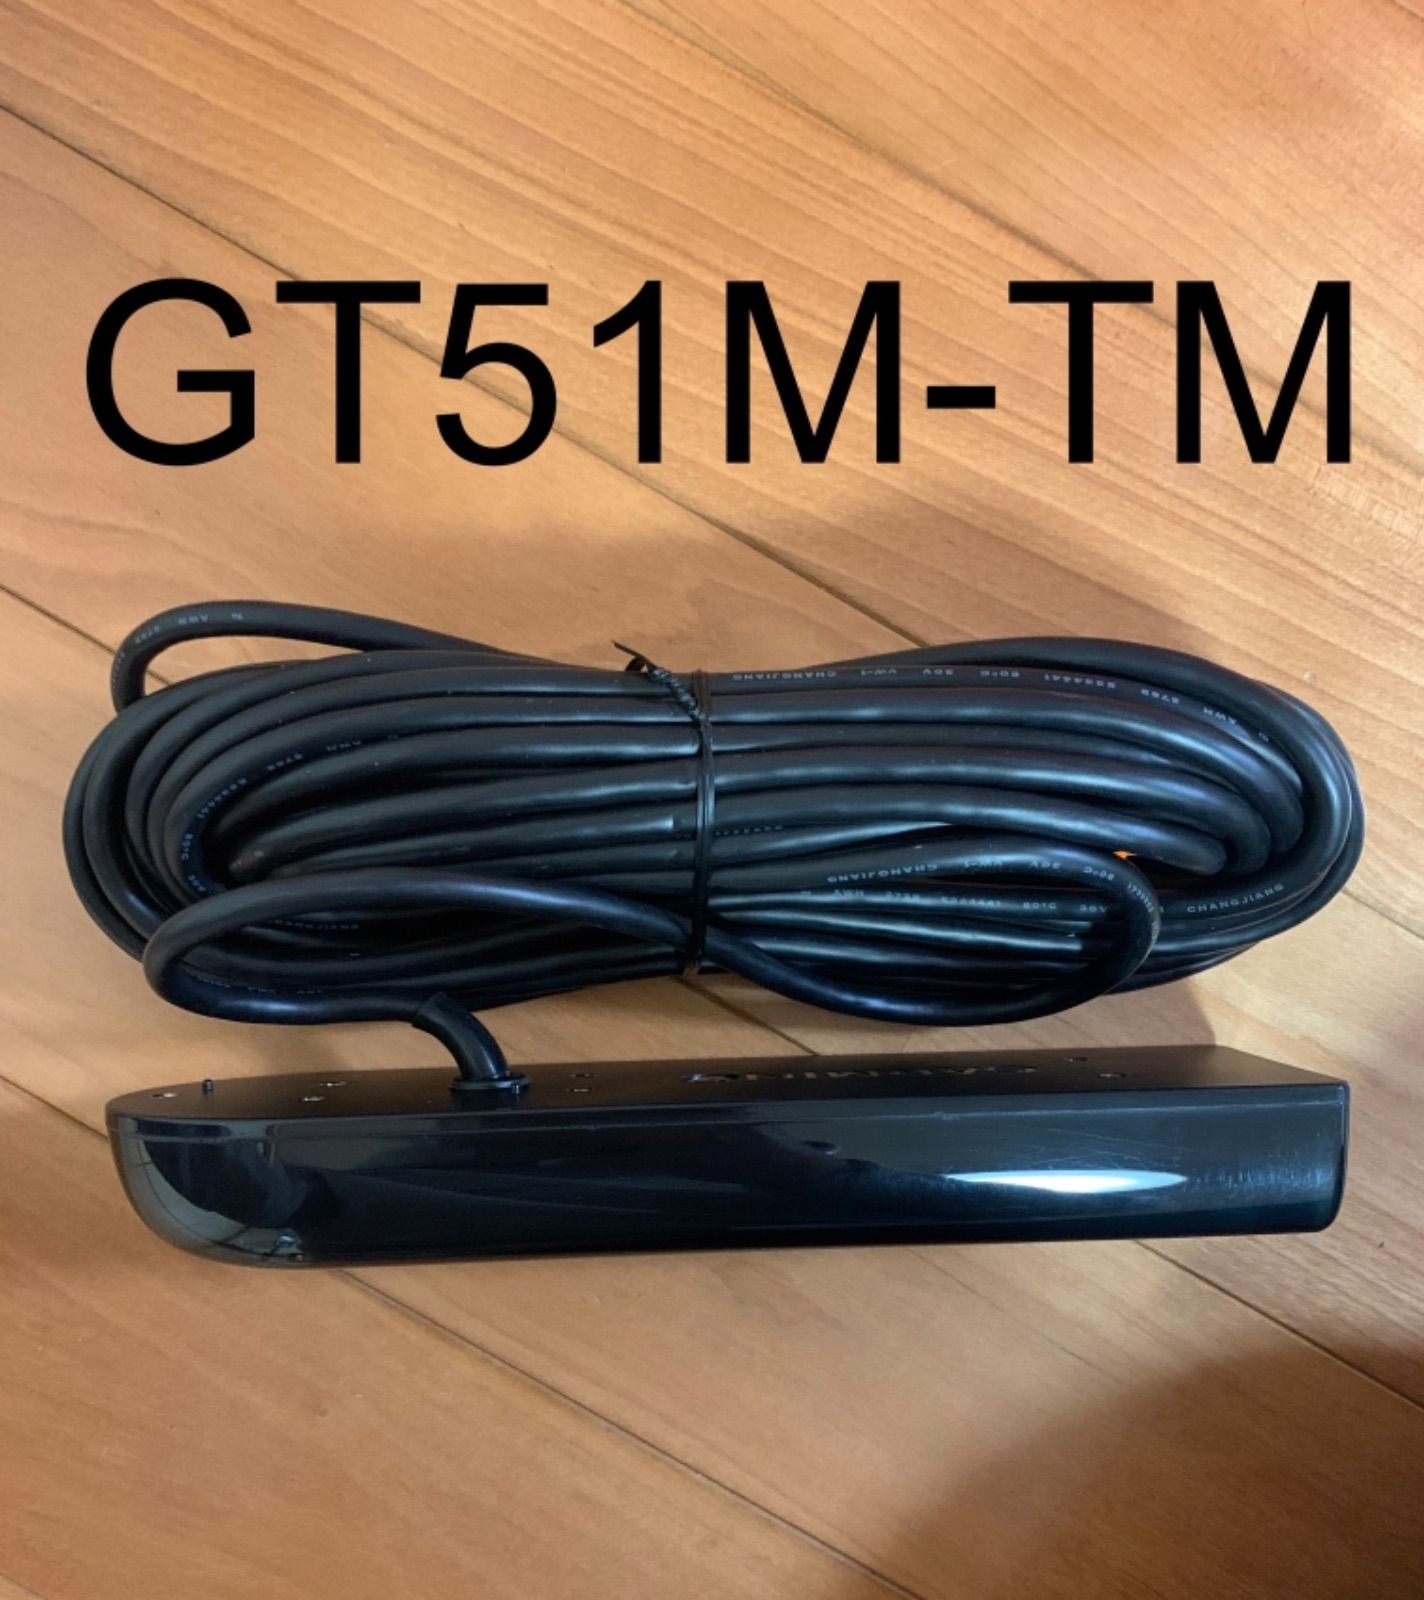 ガーミン エコマップUHD7インチ+GT51M-TM振動子セット